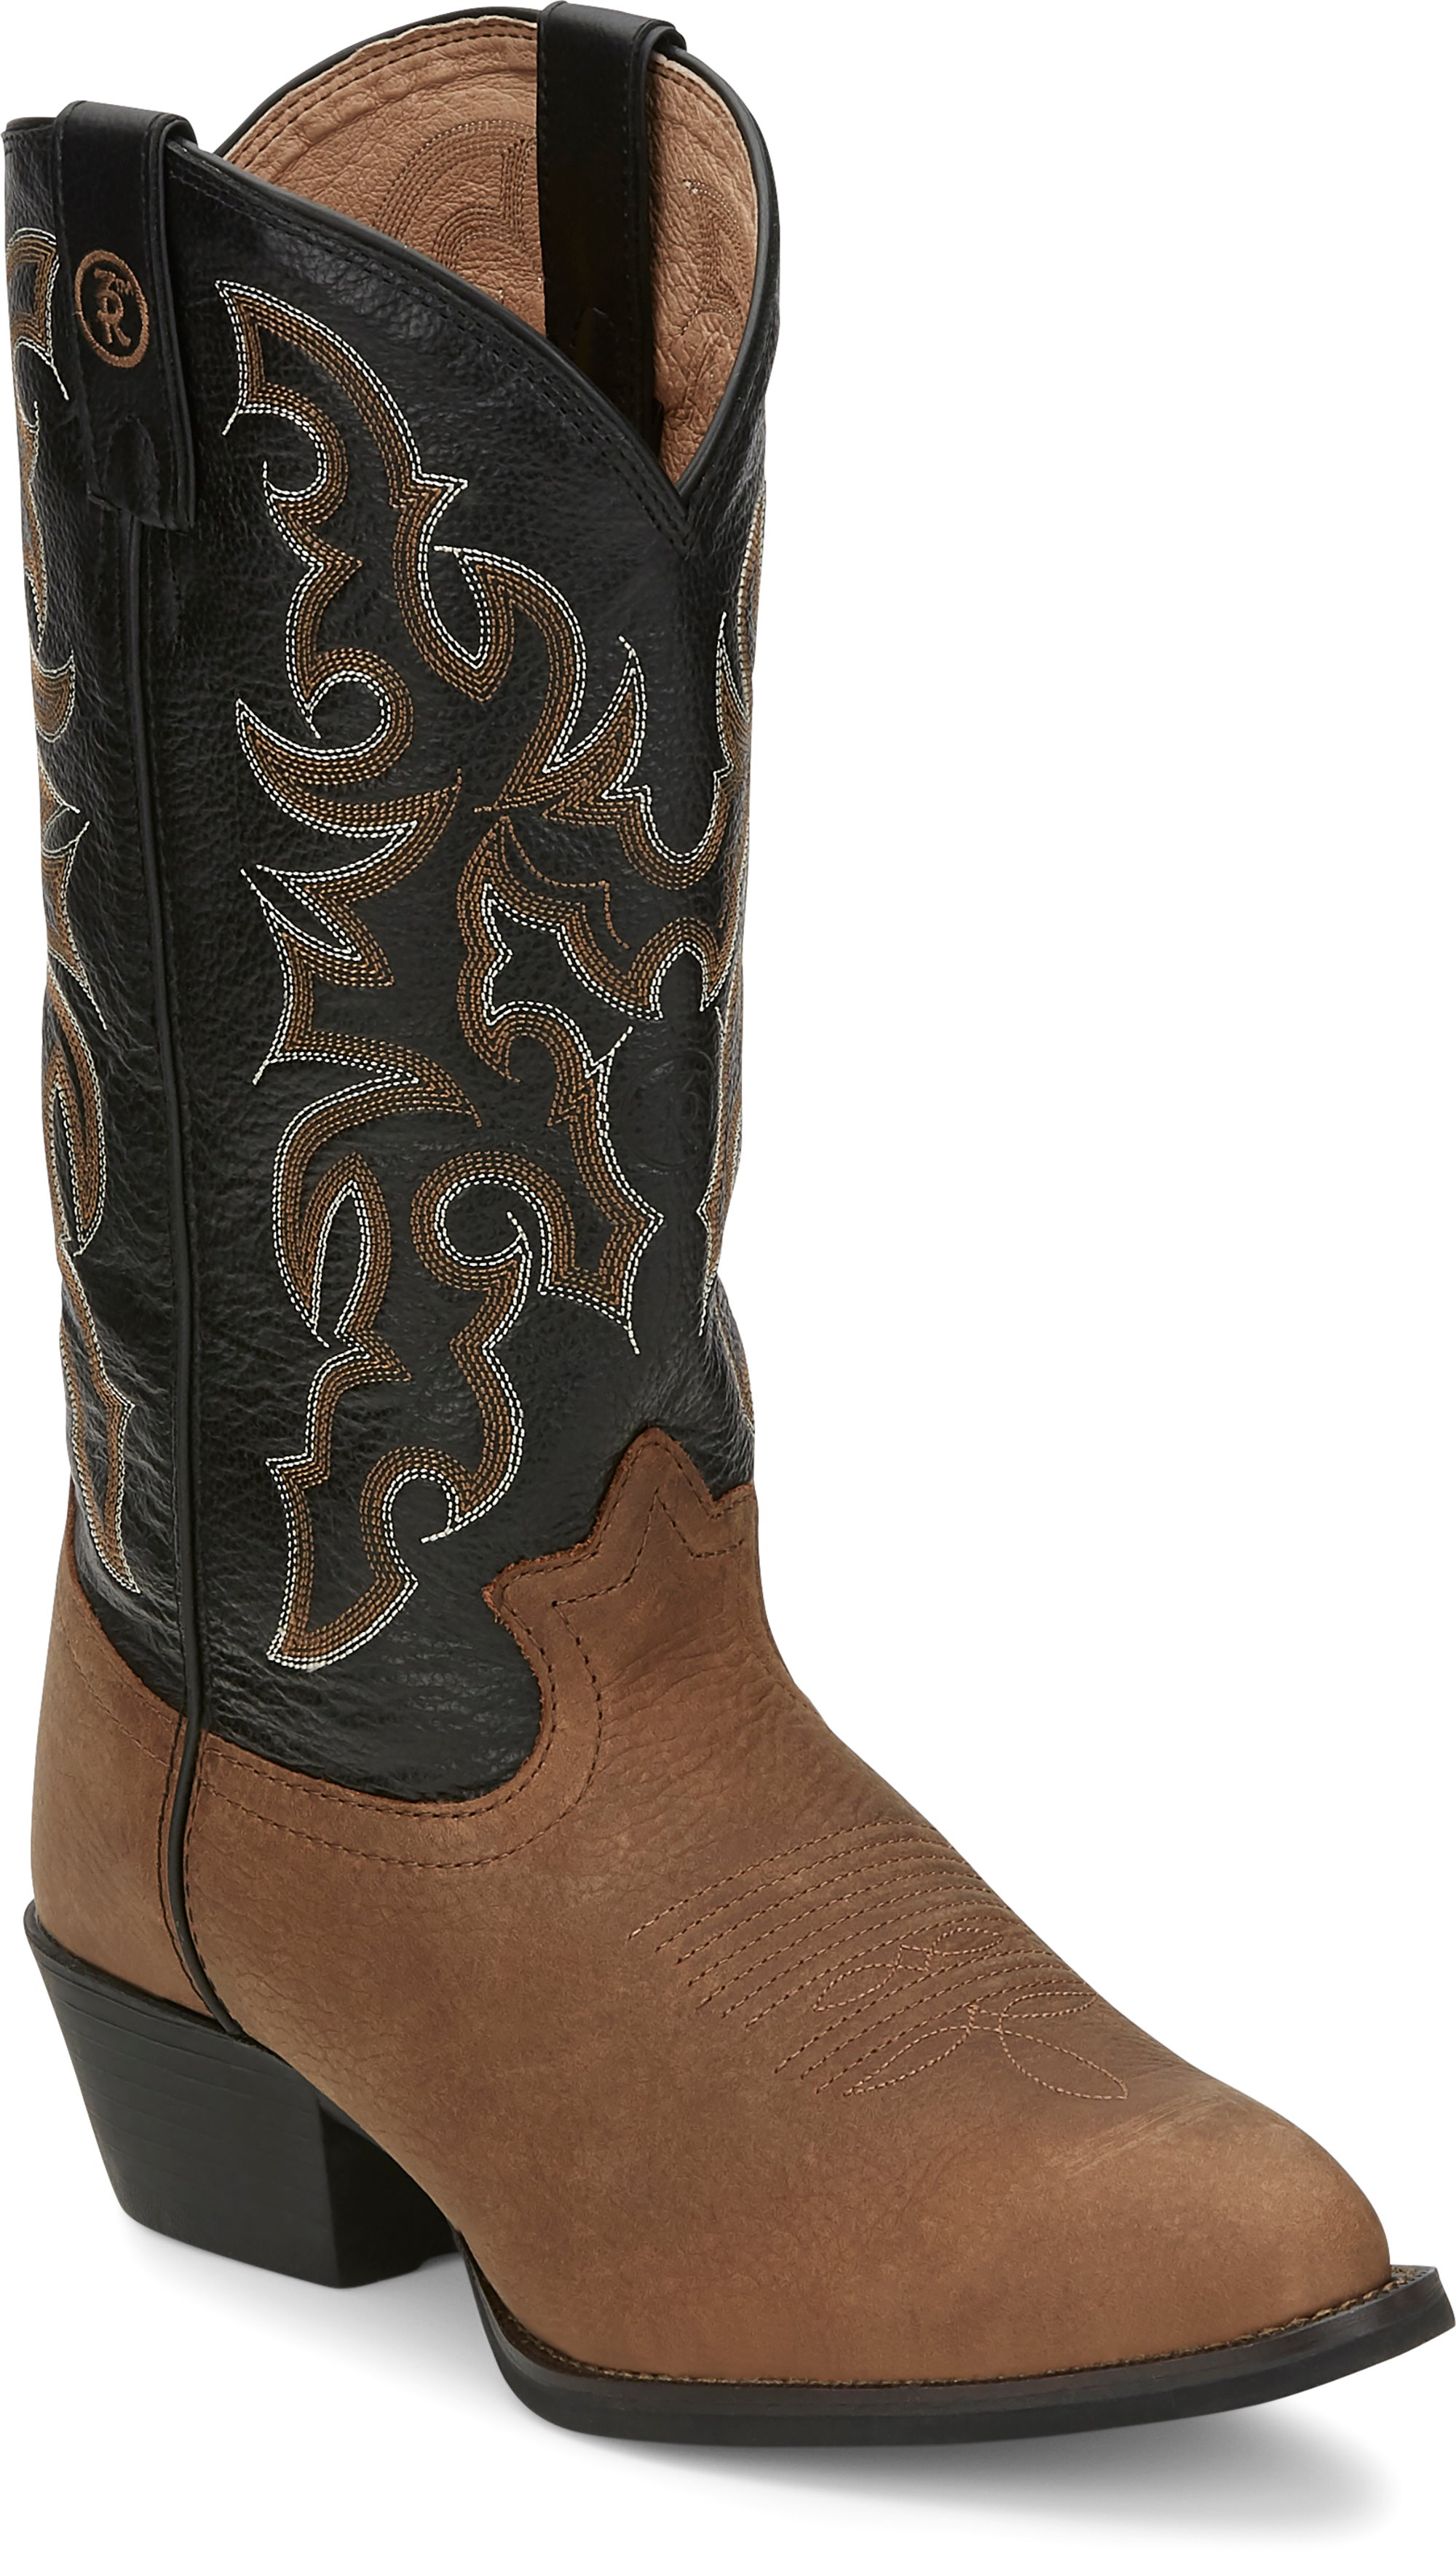 tony lama cowboy boots near me